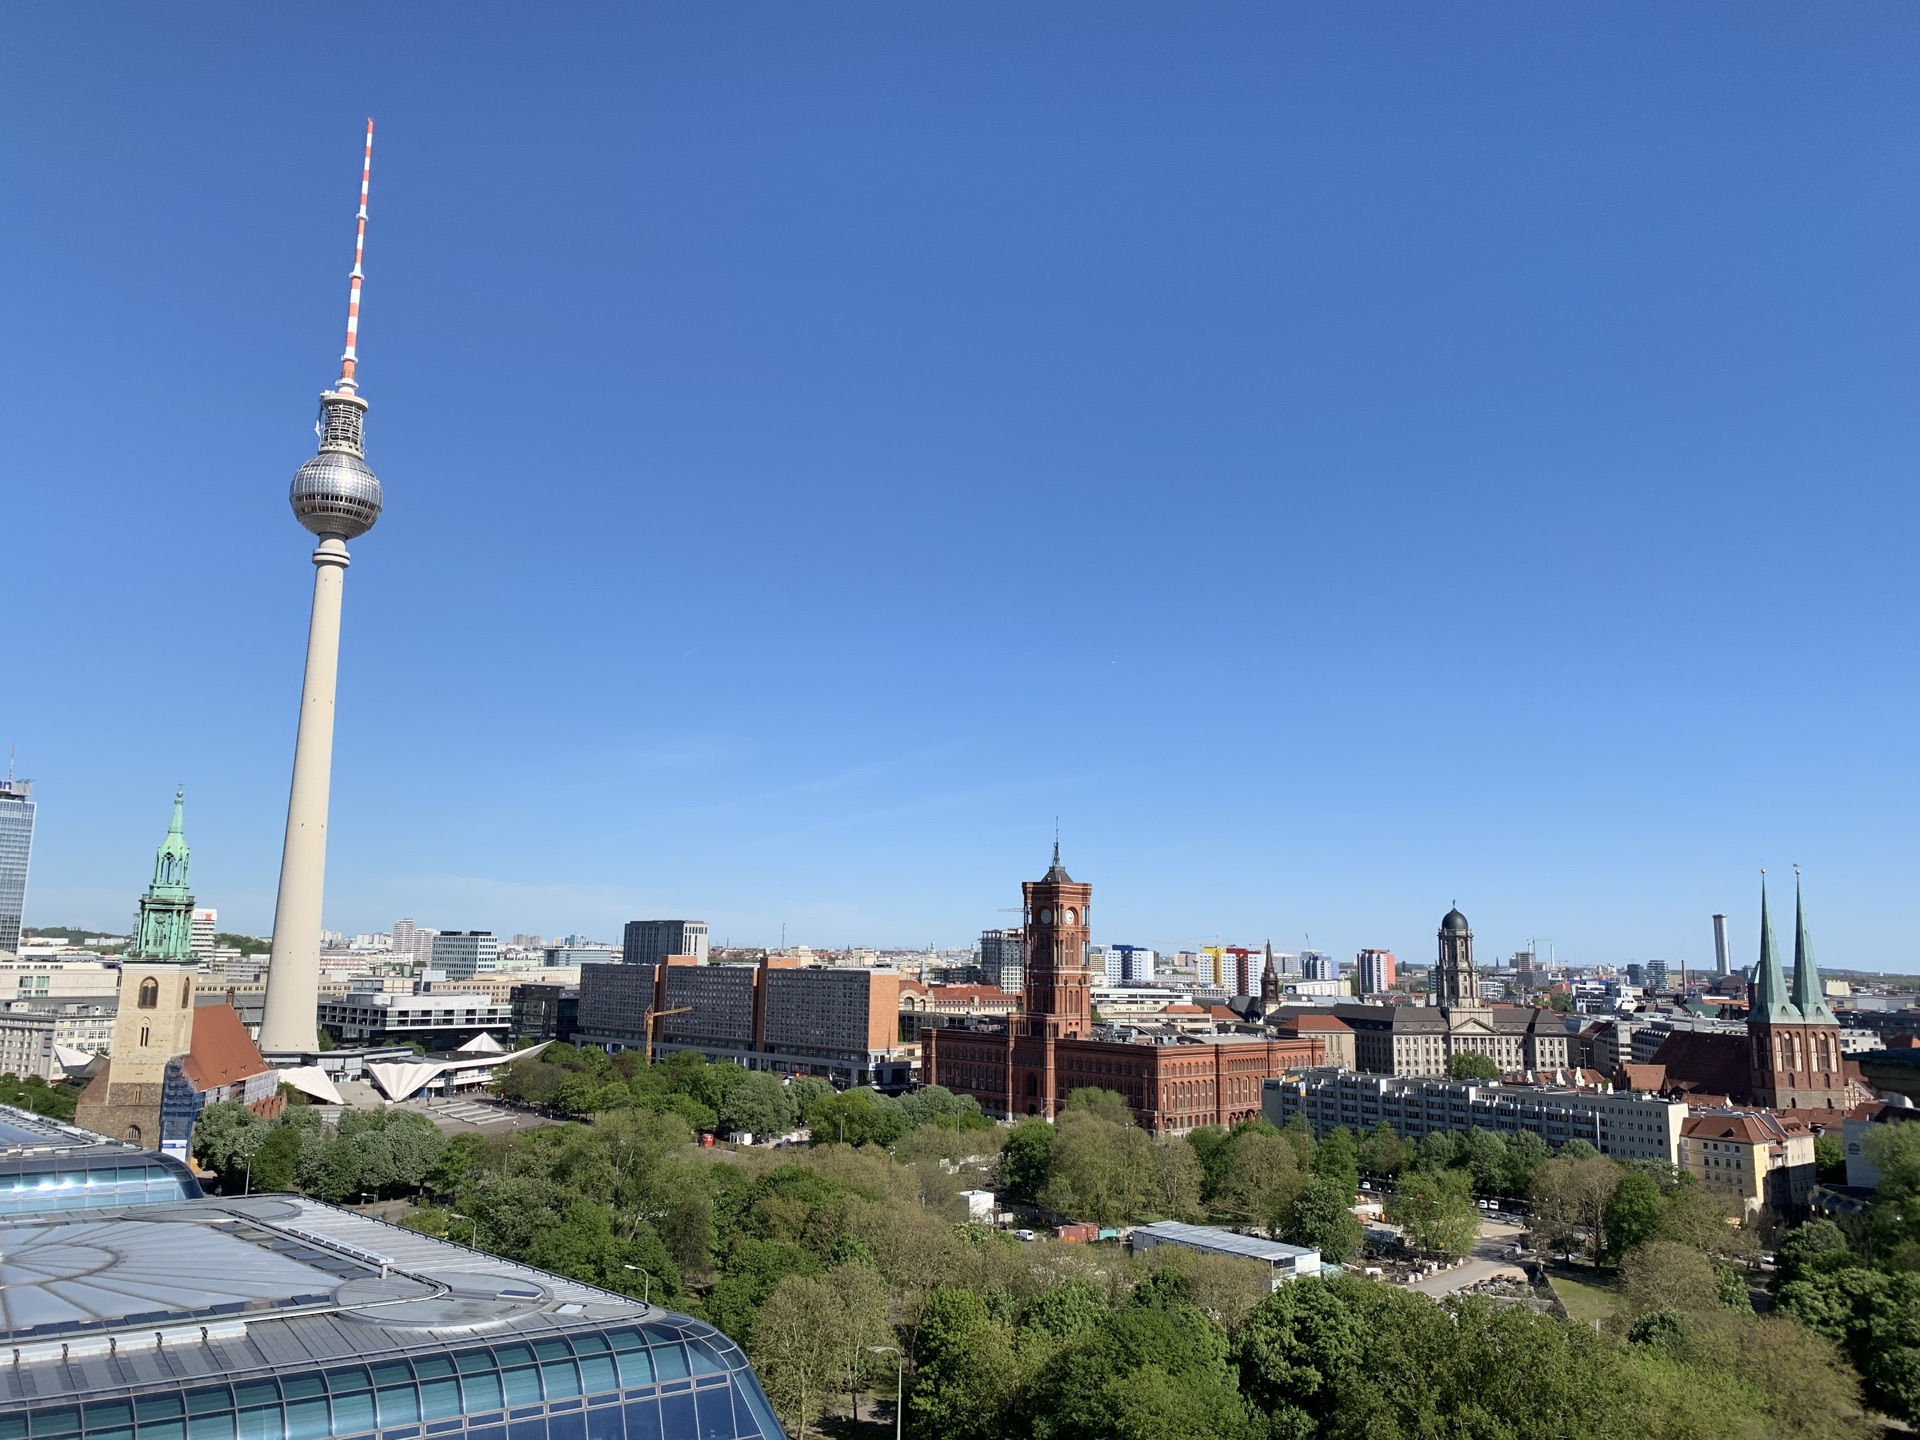 柏林 电视塔 观光 - Pixabay上的免费照片